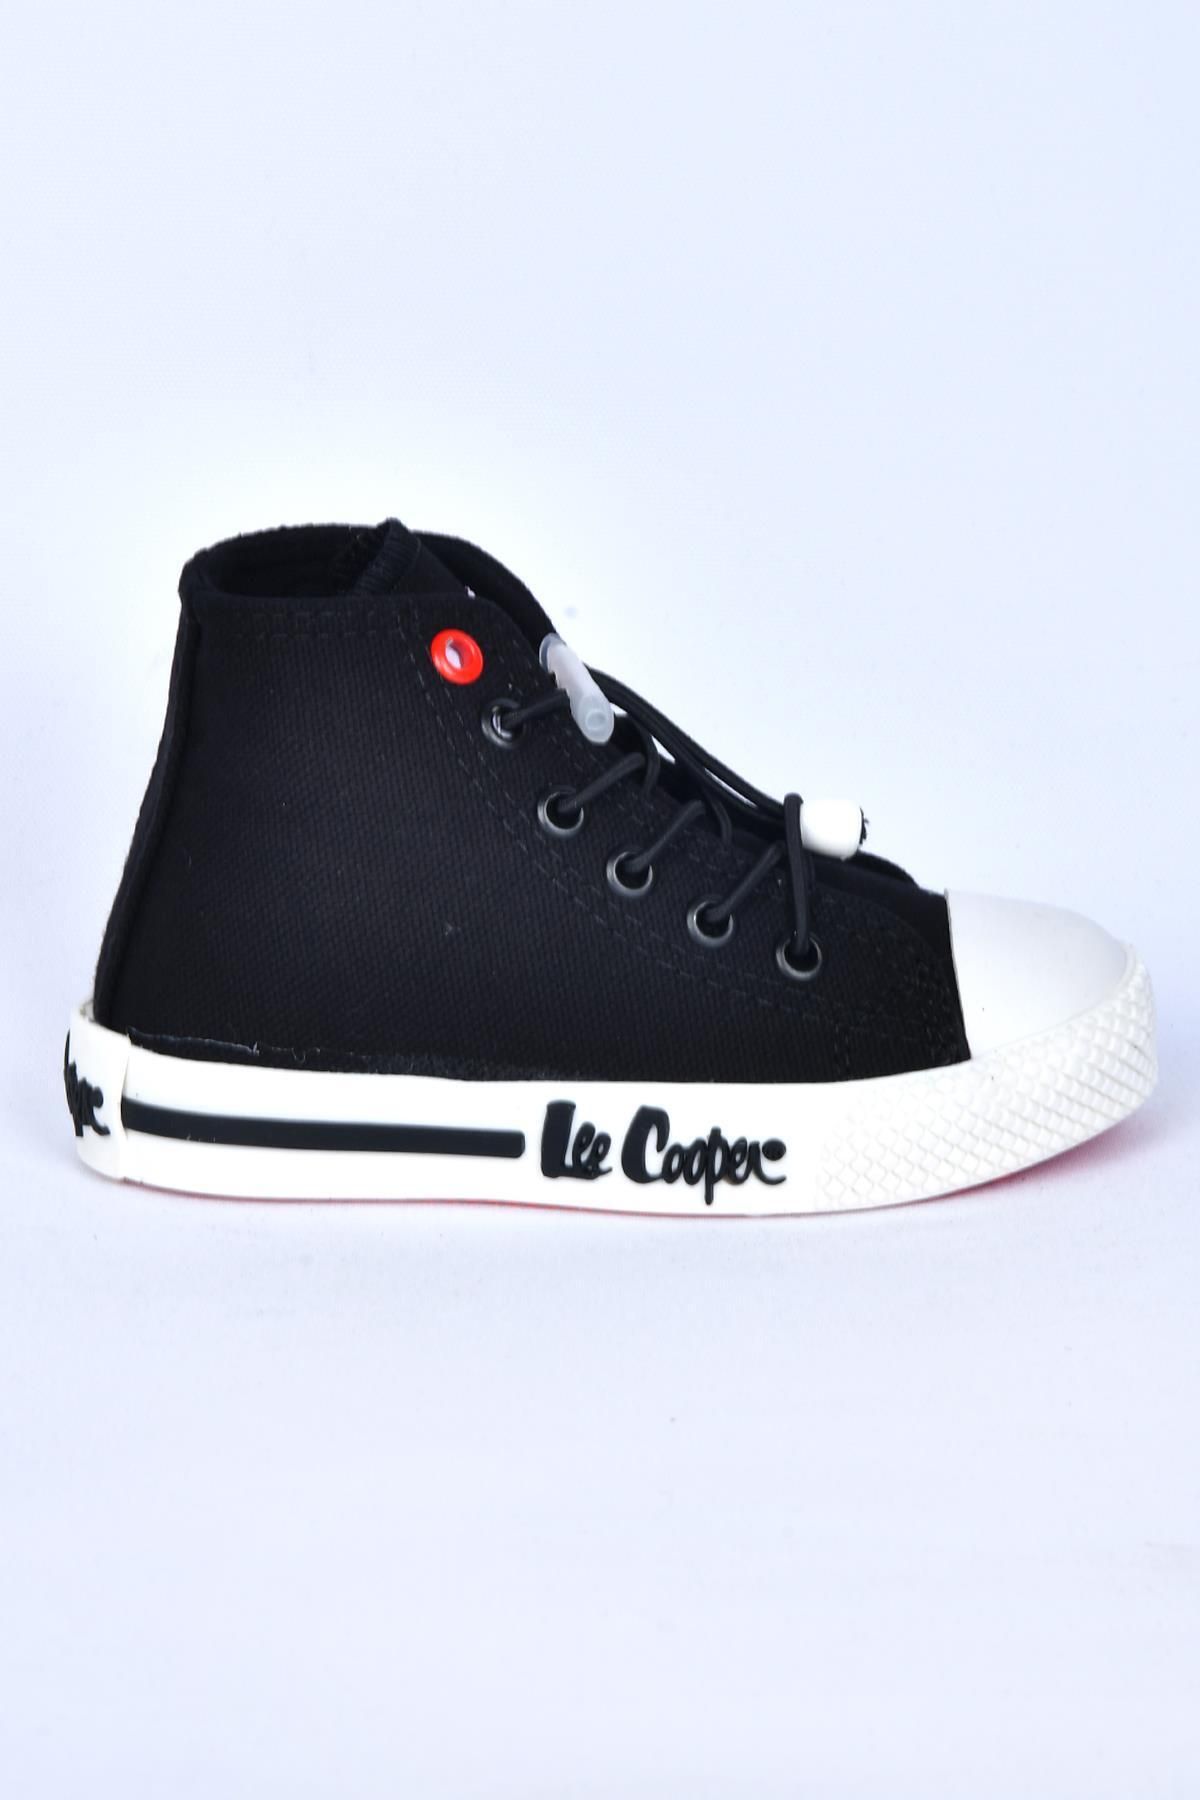 Lee Cooper LC-30054 کفش ورزشی پسران سیاه